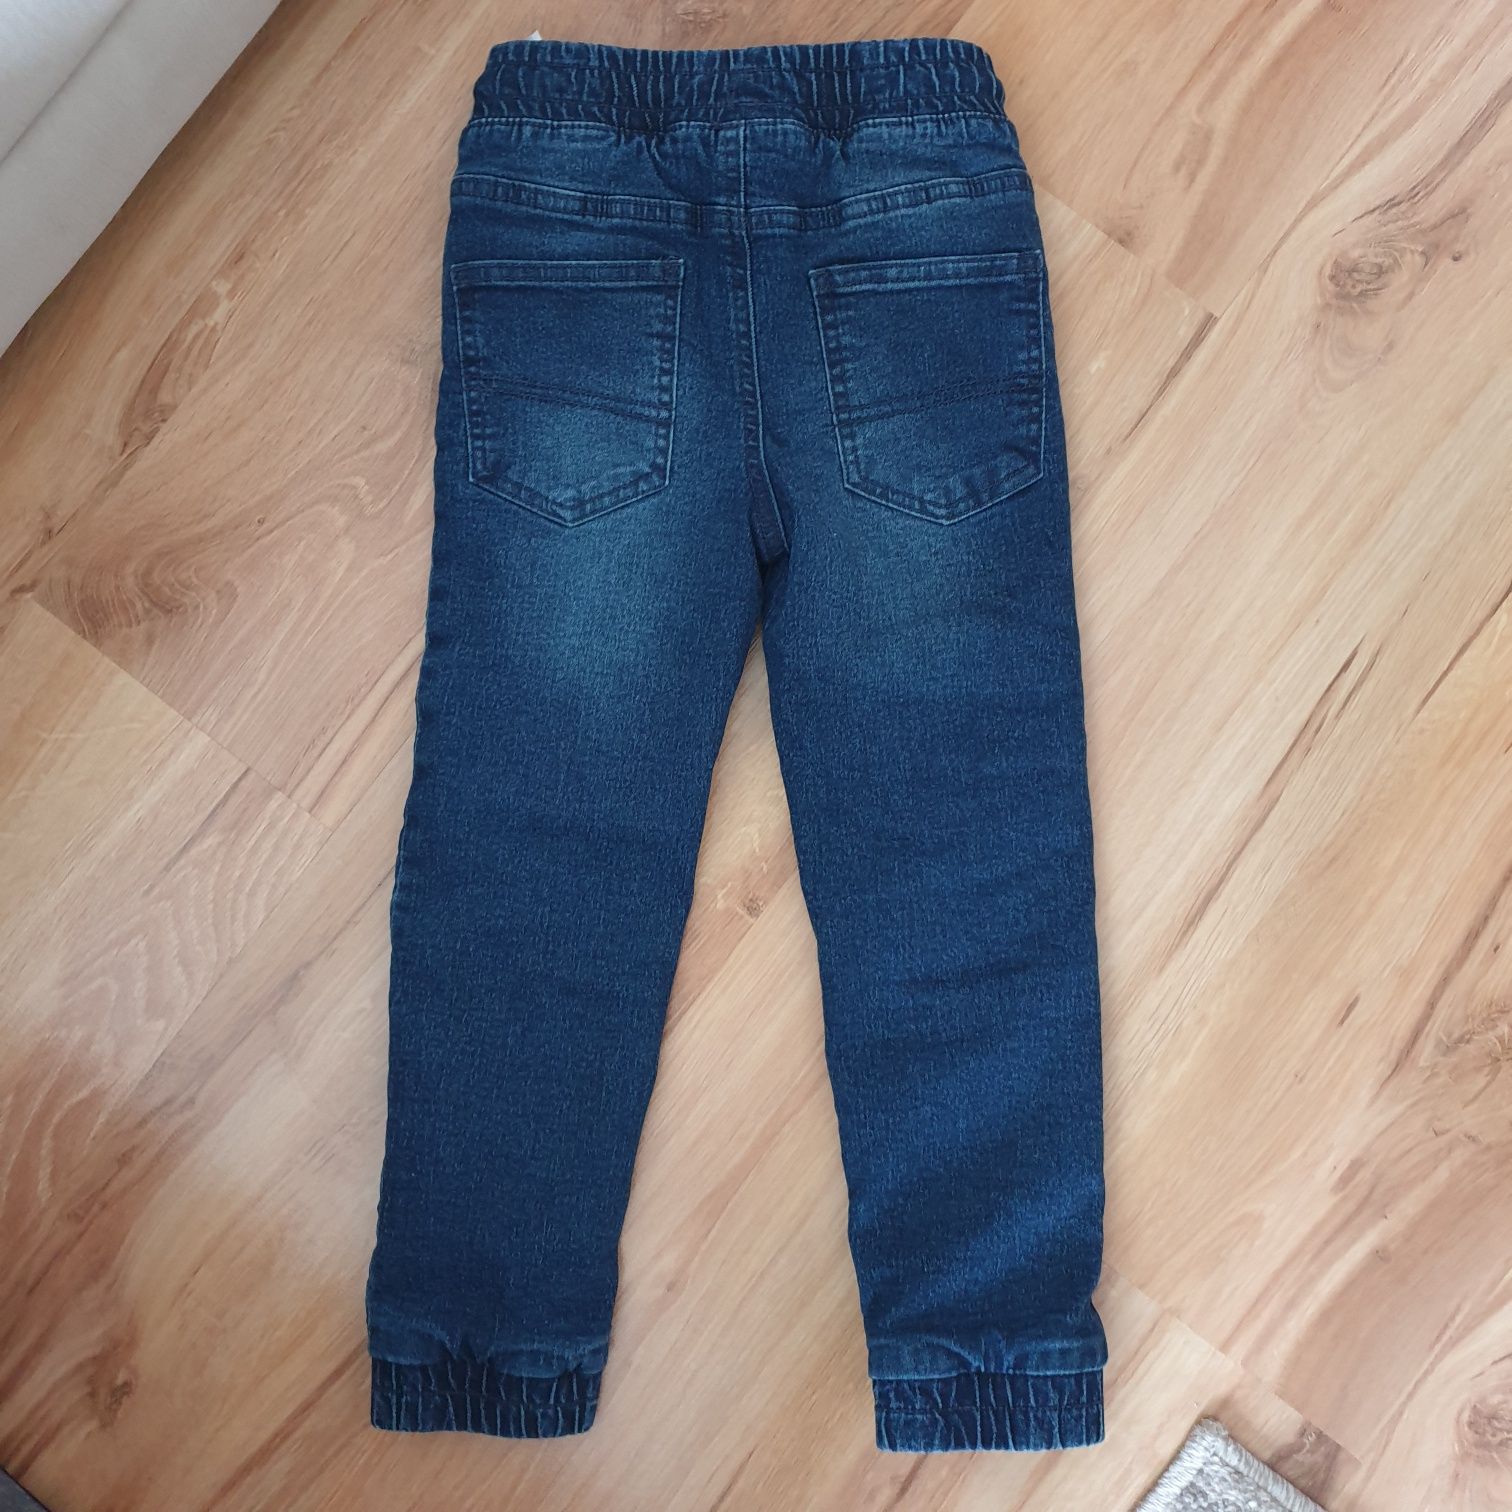 Spodnie ocieplane chłopięce jeansy r 116